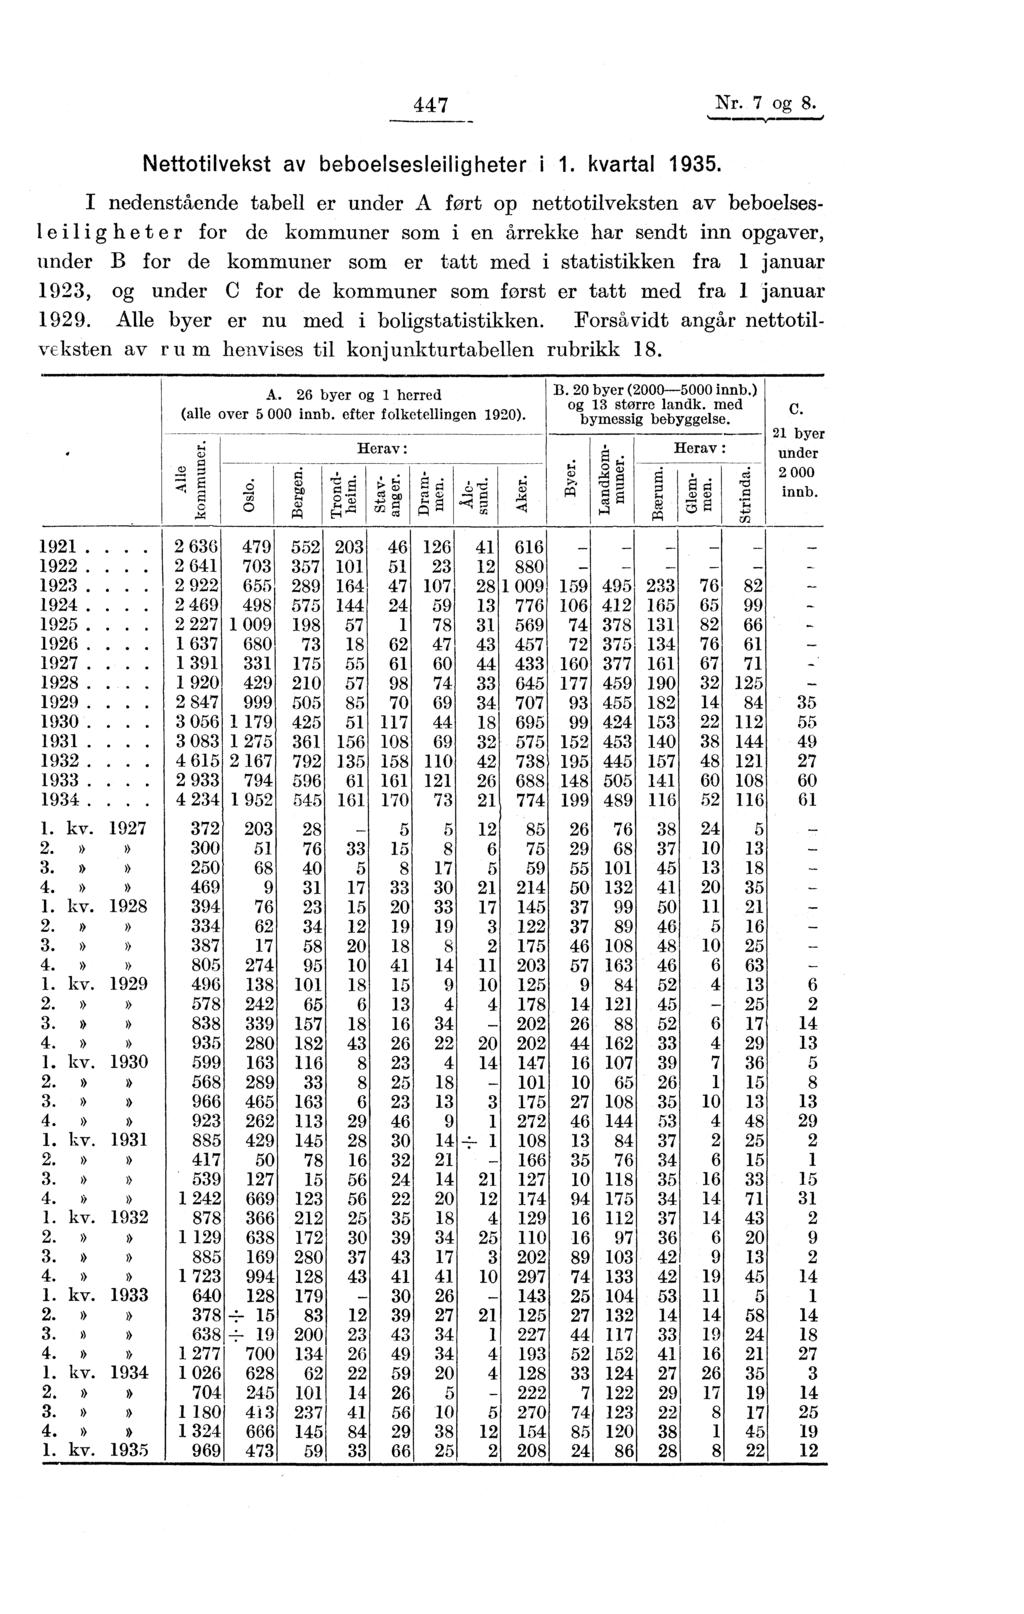 7 Nr. 7 og 8. Nettotilvekst av beboelsesleiligheter i 1. kvartal 1935.